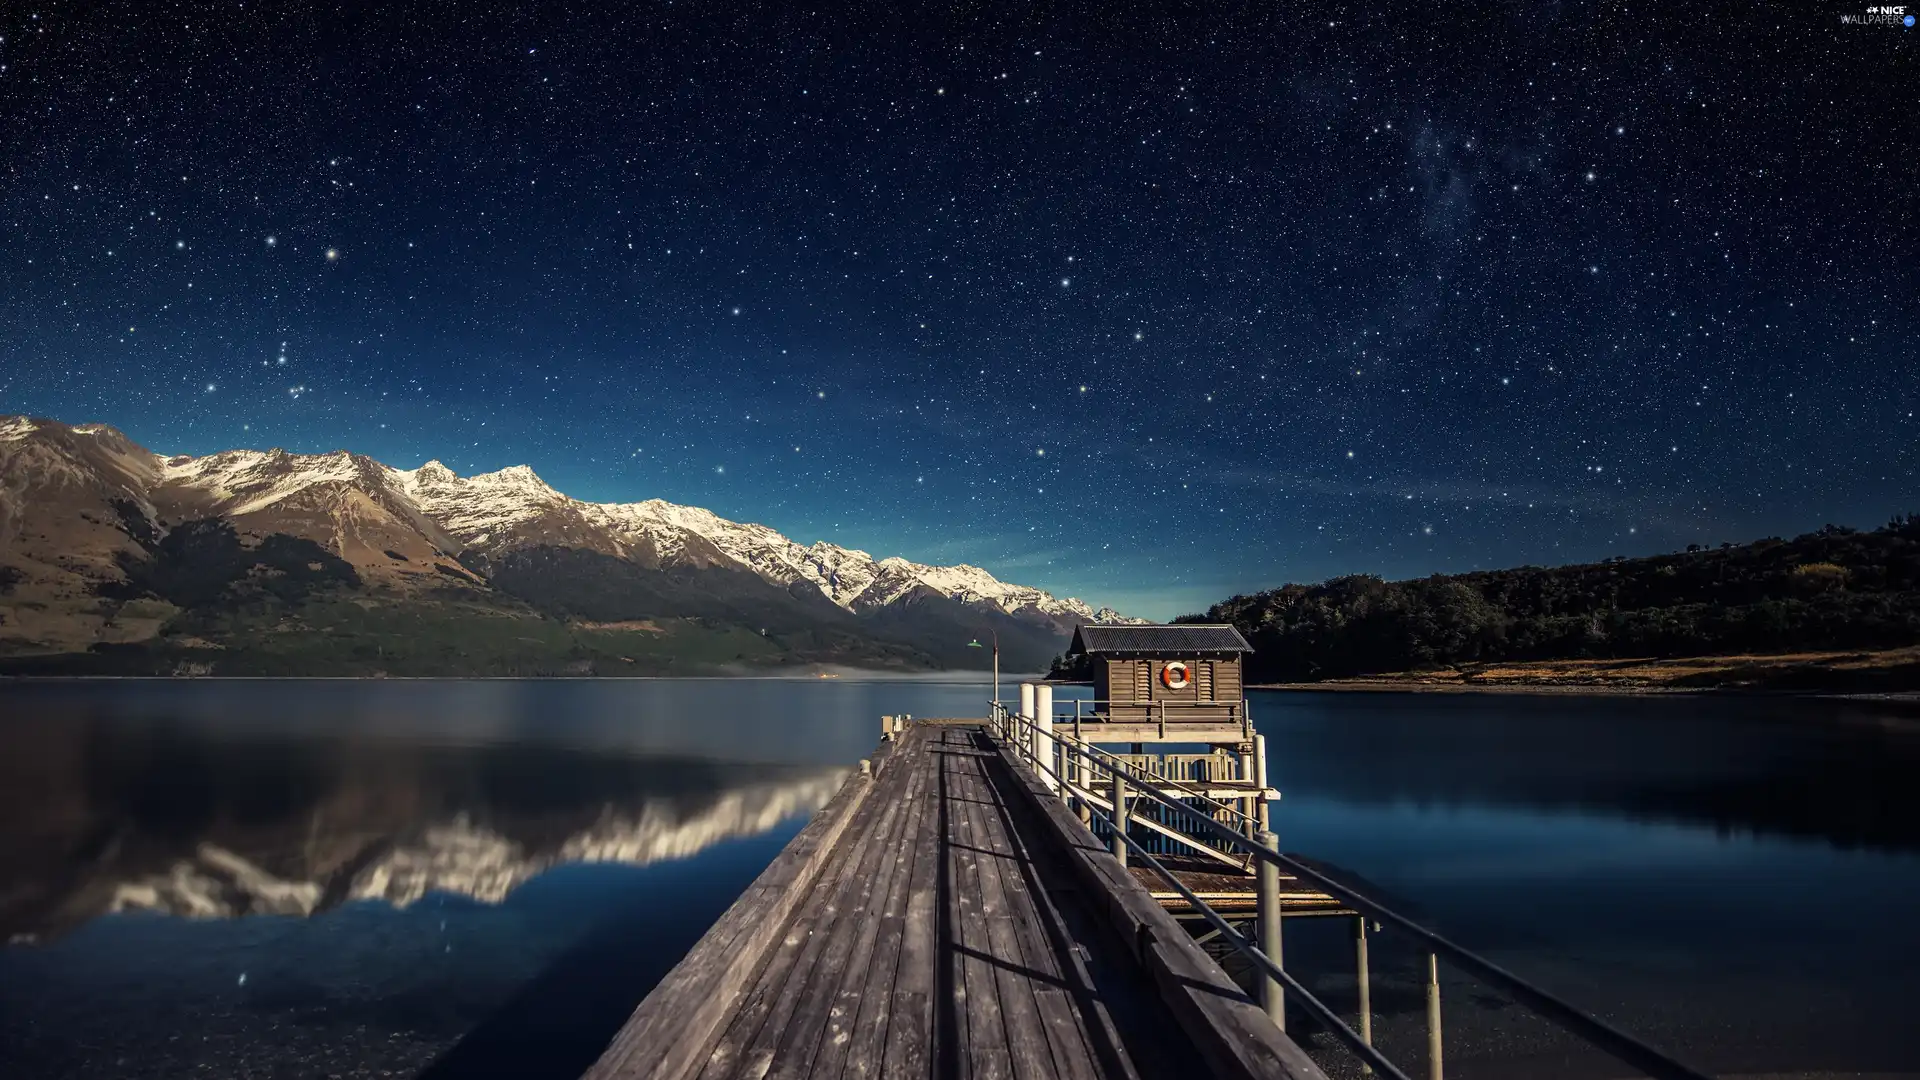 star, Platform, Mountains, Night, lake